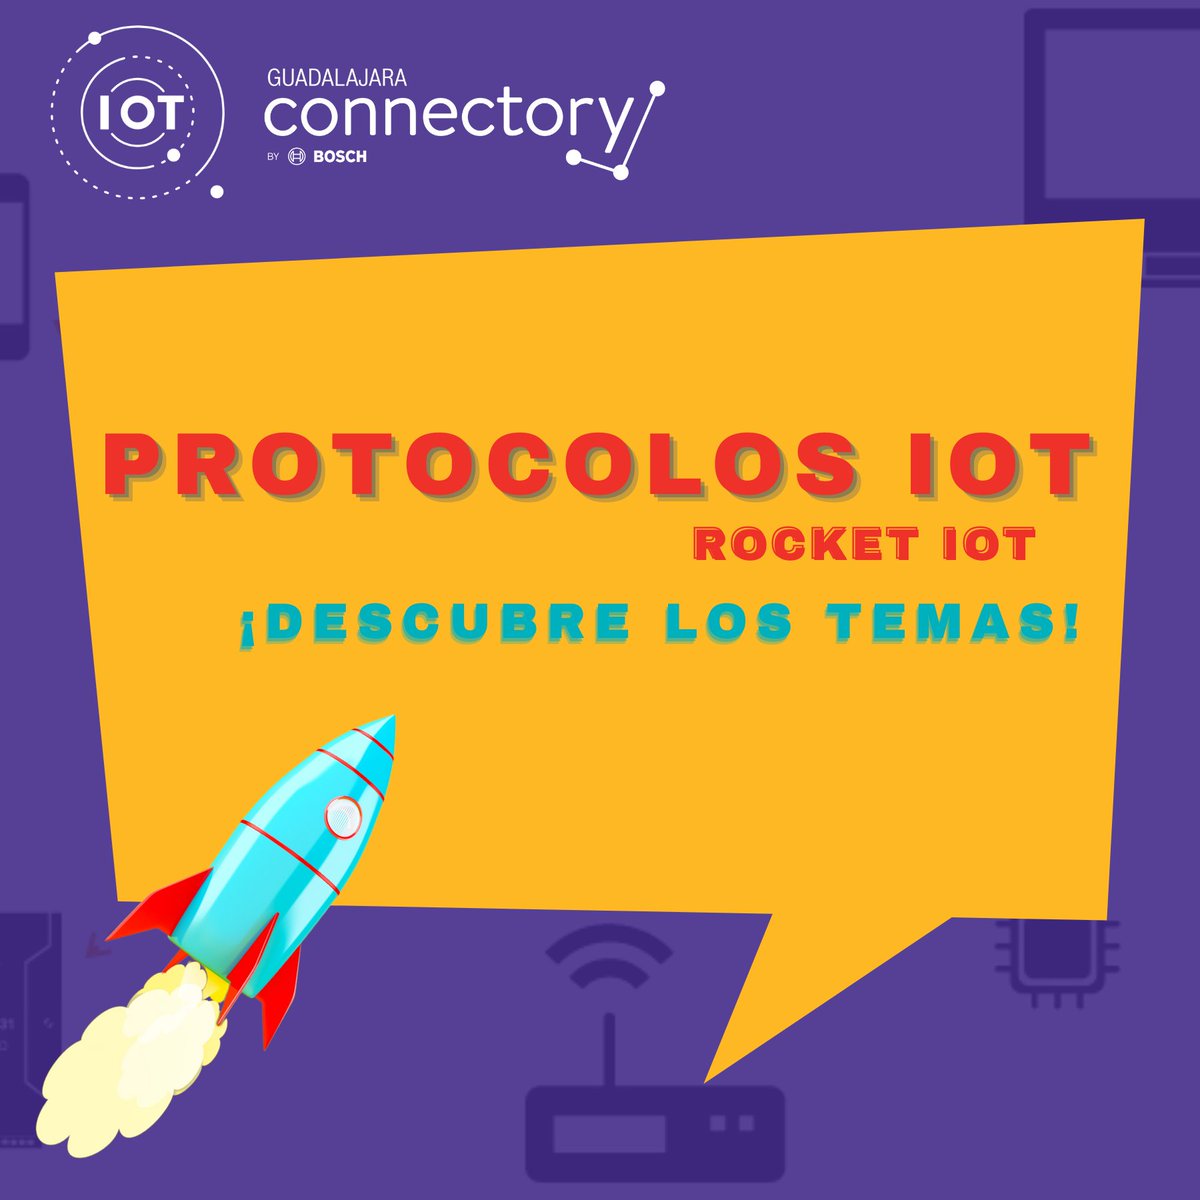 ¡Disfruta de Nuestro #VeranoIoT del 12 al 23 de Julio! 
#IoTLab #RocketIoT #GuadalajaraConnectory #InnovacionIoT #IoTSchool